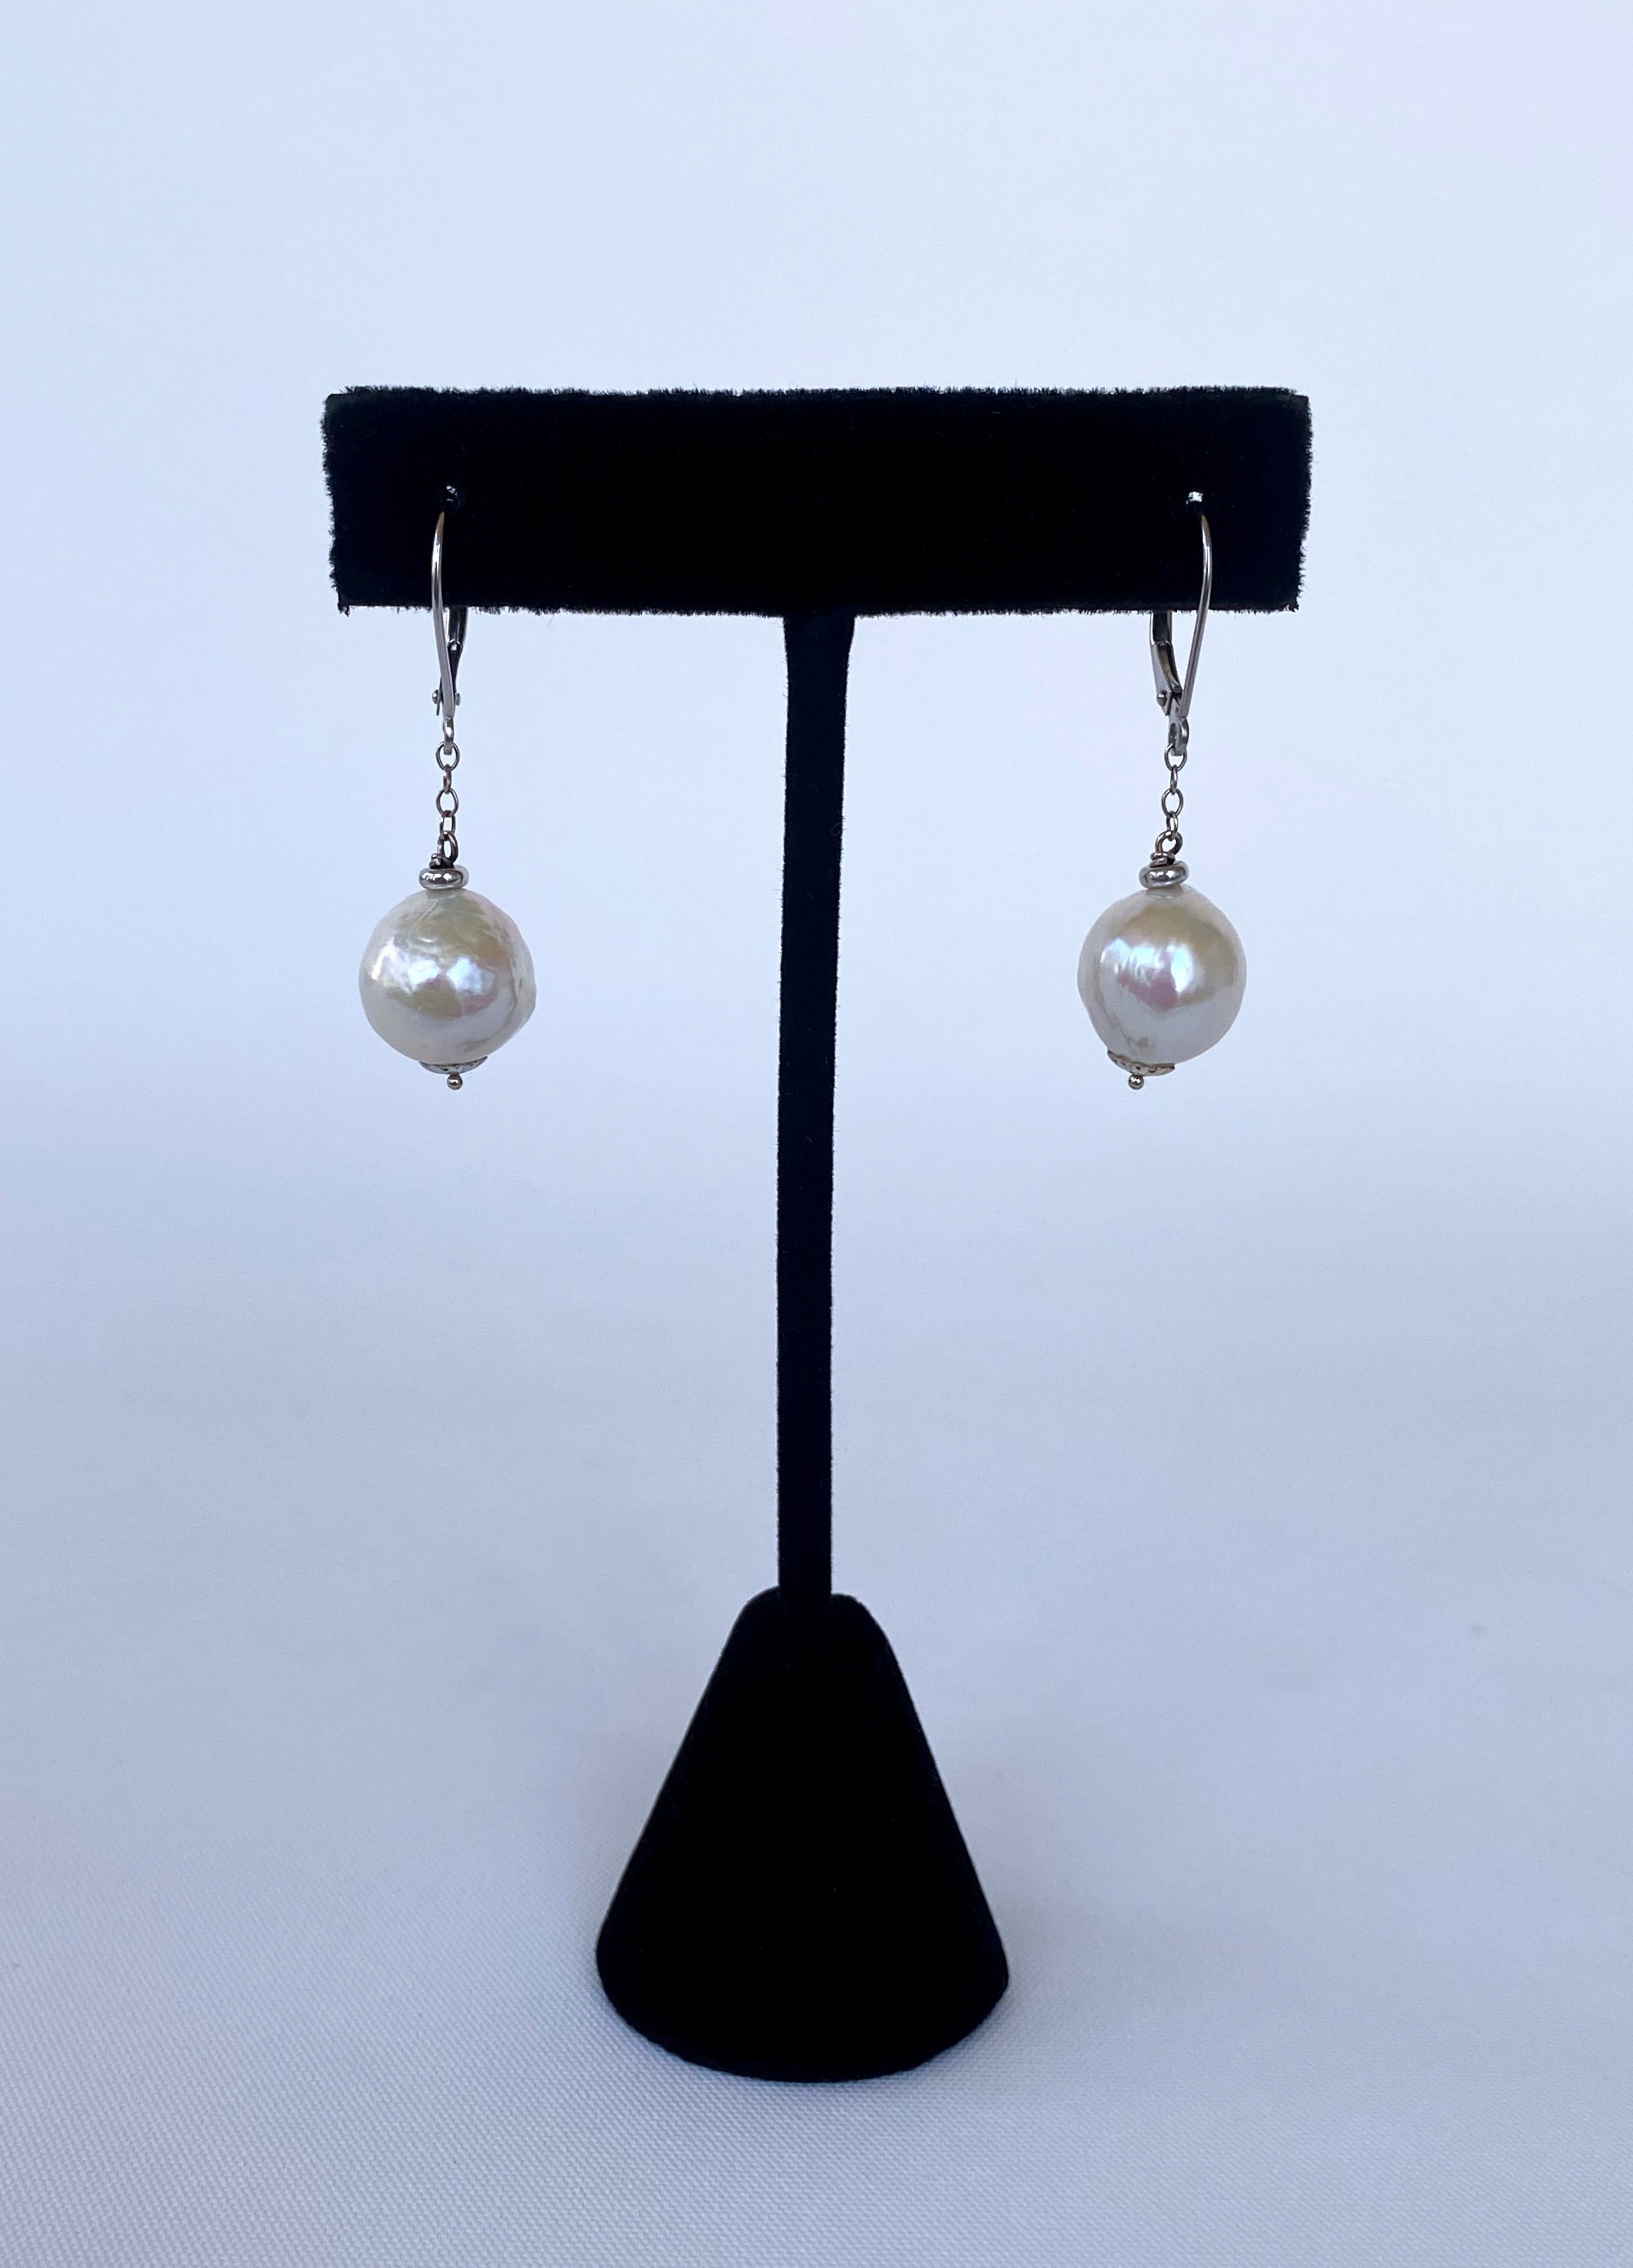 white pearl earrings hanging